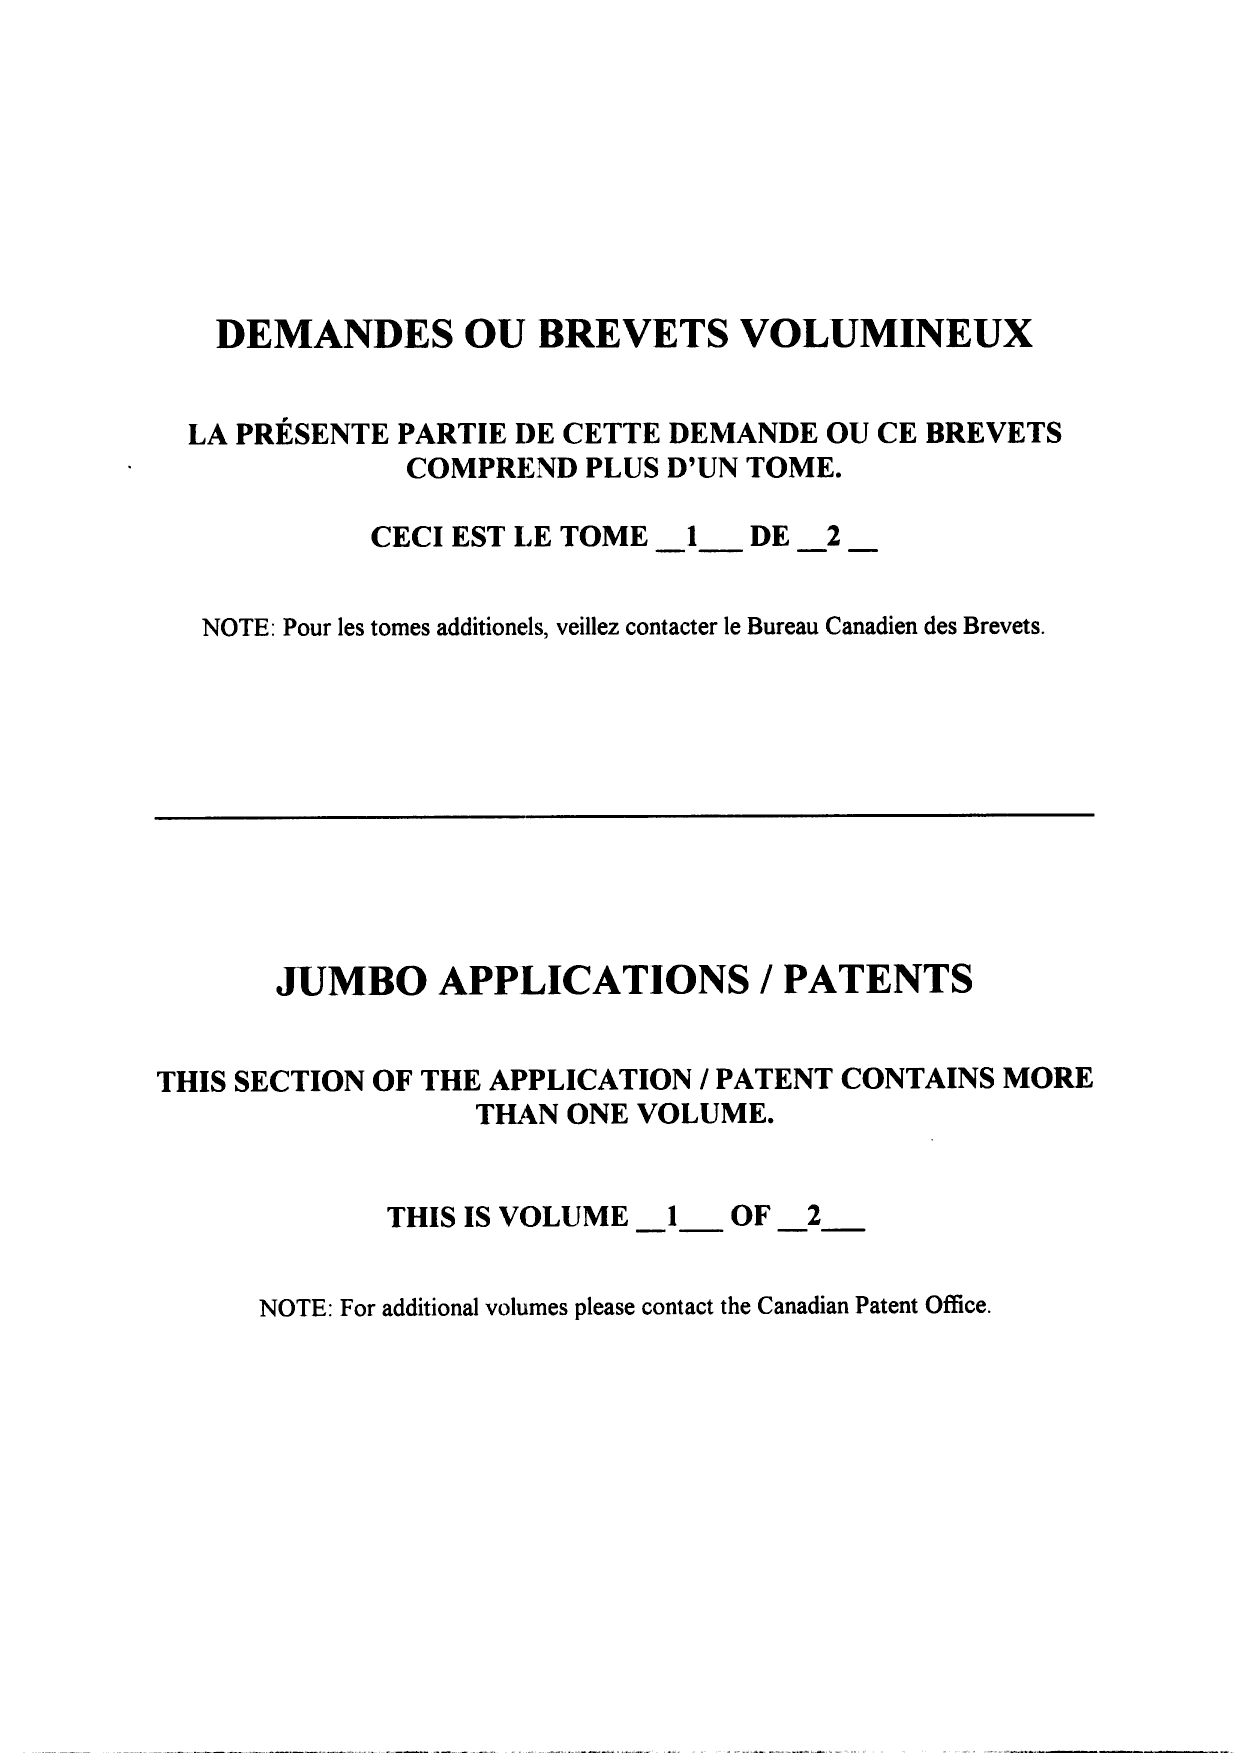 Canadian Patent Document 2324226. Description 20100416. Image 1 of 250